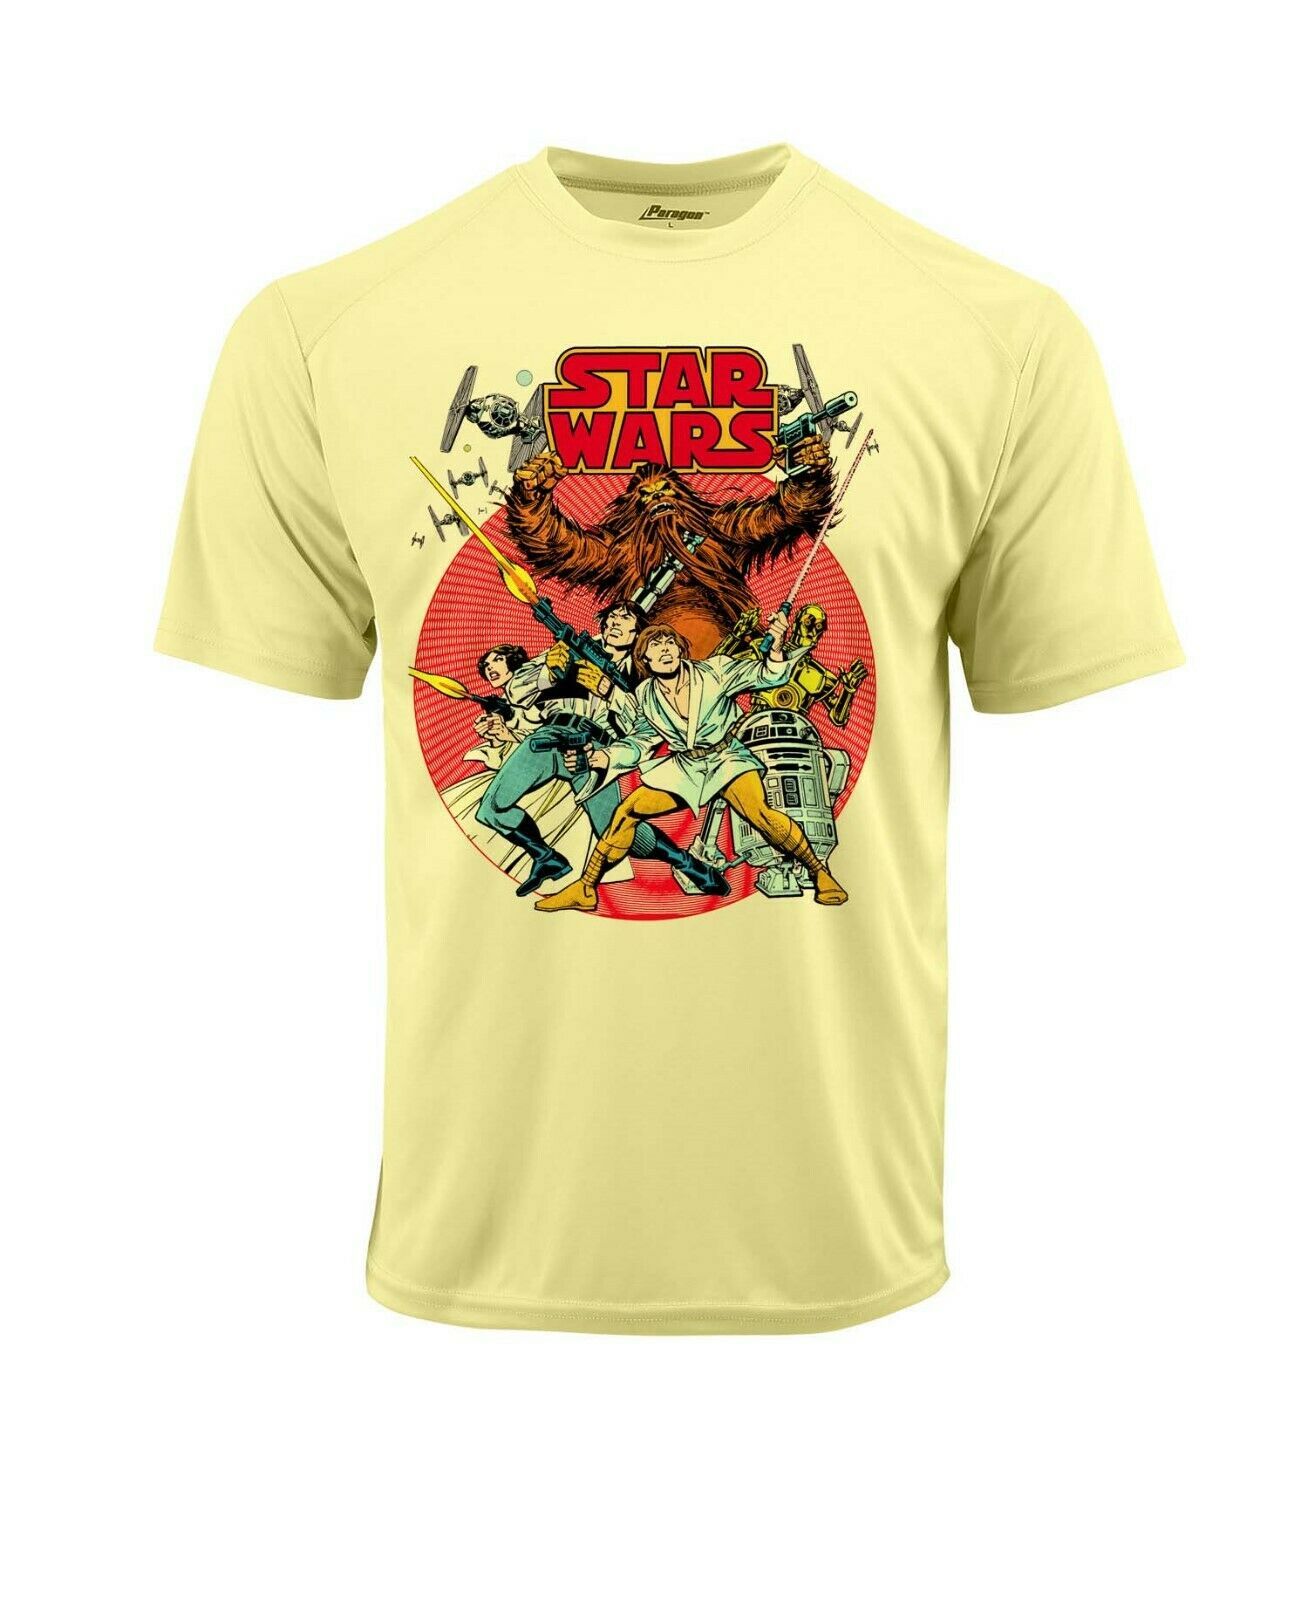 Star Wars Dri Fit Comic Book T-shirt moisture wick retro graphic retro ...